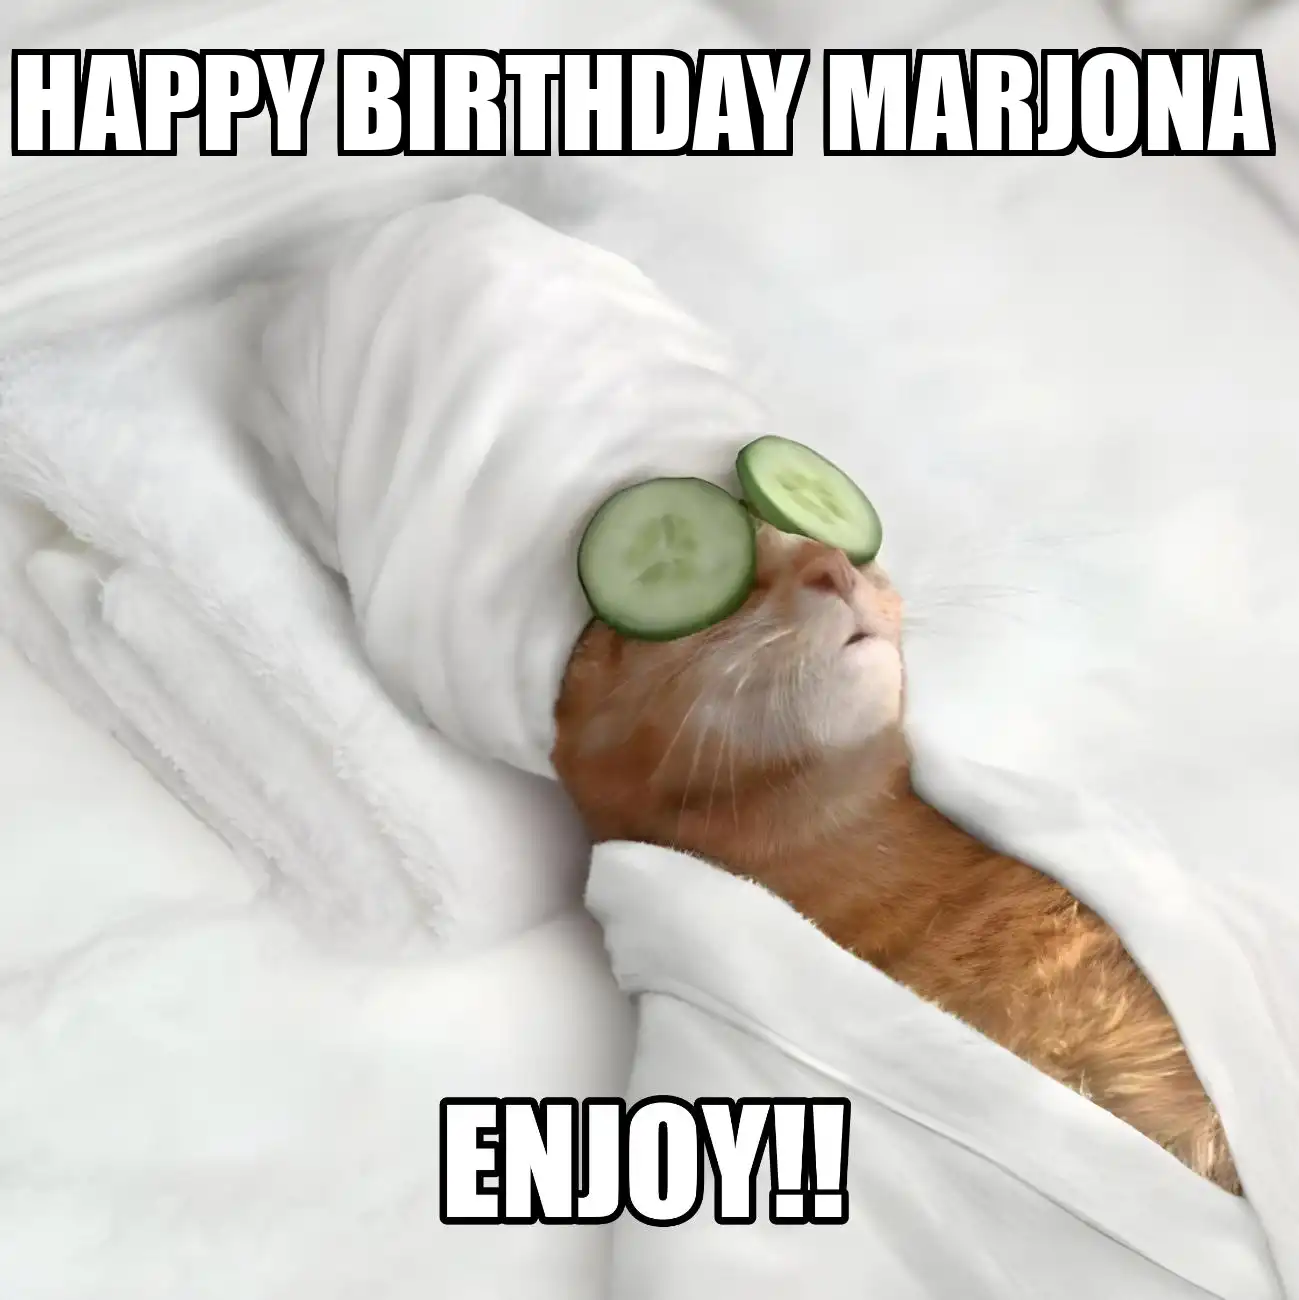 Happy Birthday Marjona Enjoy Cat Meme